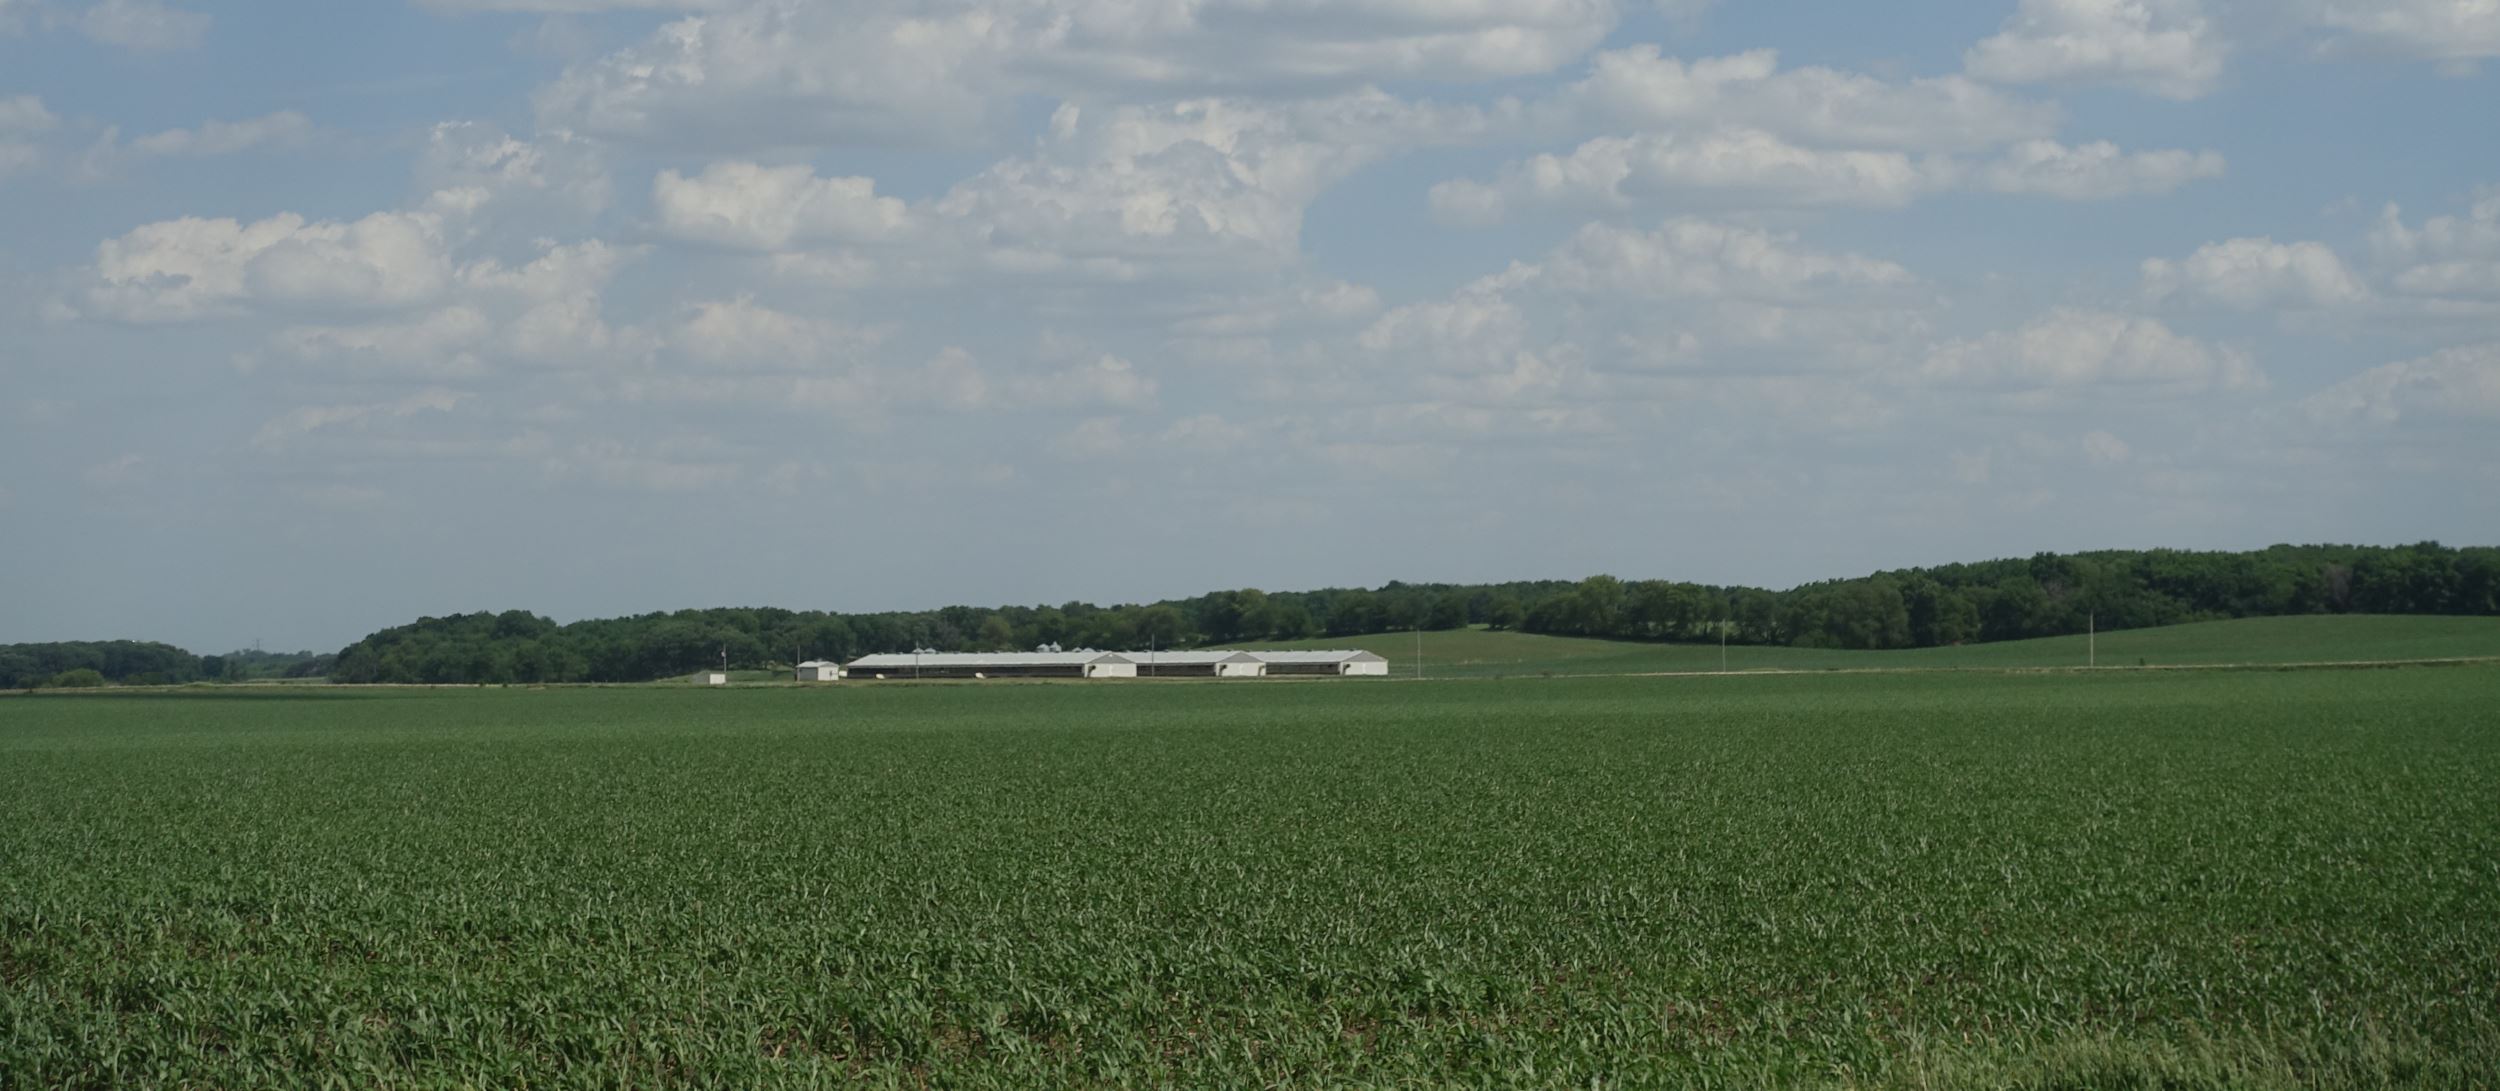 View of their farm